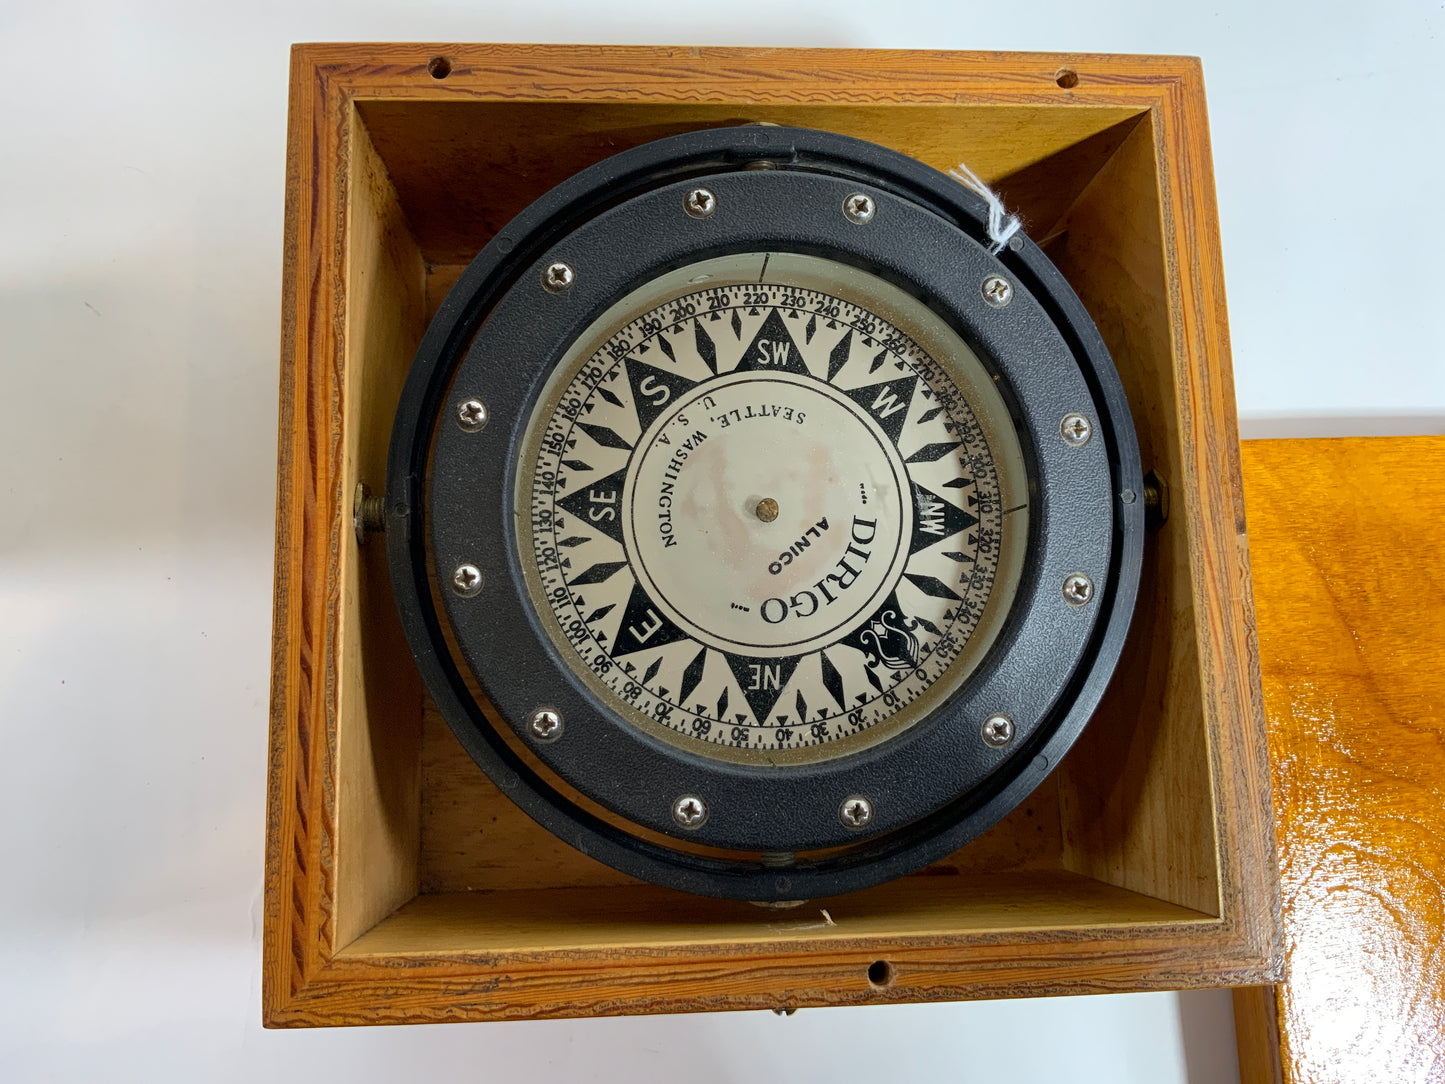 Gimballed Brass Boat Compass by Dirigo - Lannan Gallery